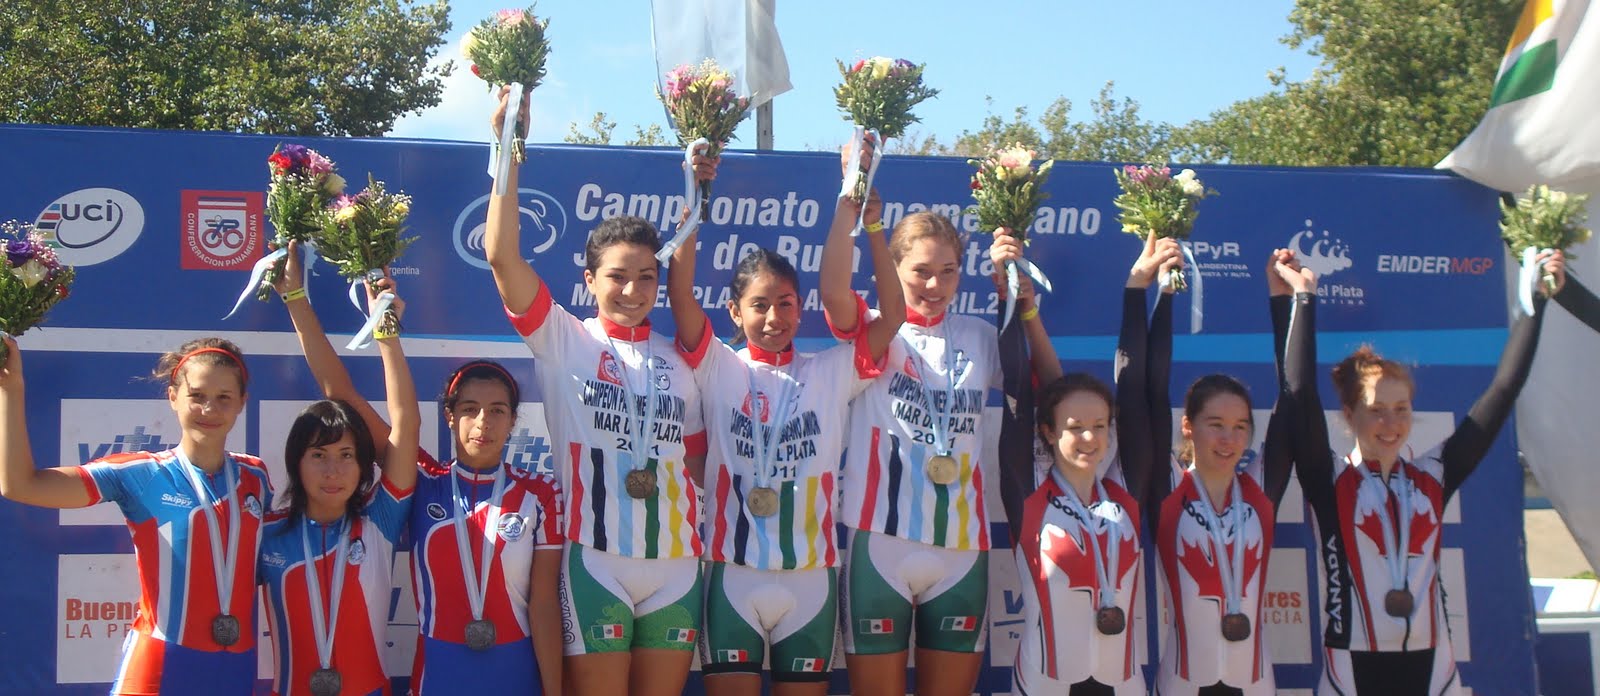 Panamericano Junior de Ruta y Pista Argentina 2011 %2540zciclismo+persecucio+x+equipos+muj